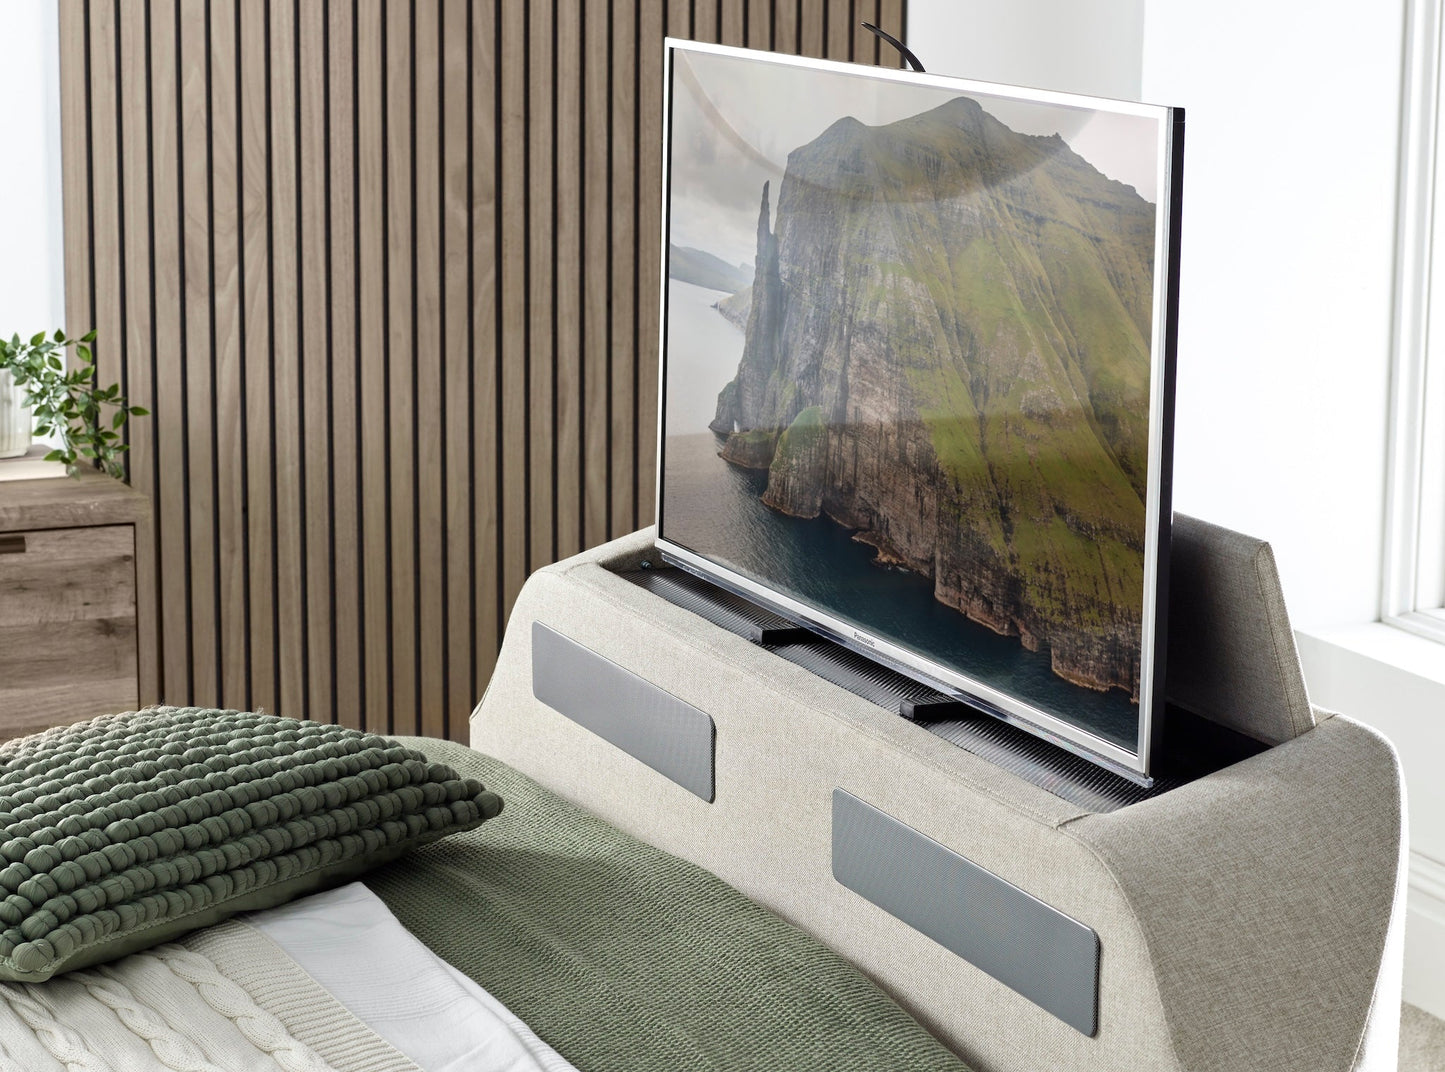 Titan 4.1 Multi Media Ottoman Storage TV Bed - Super King size in Marbella Grey - TV Beds Northwest - TOT180MDG - kaydian - superkingsizetvbed